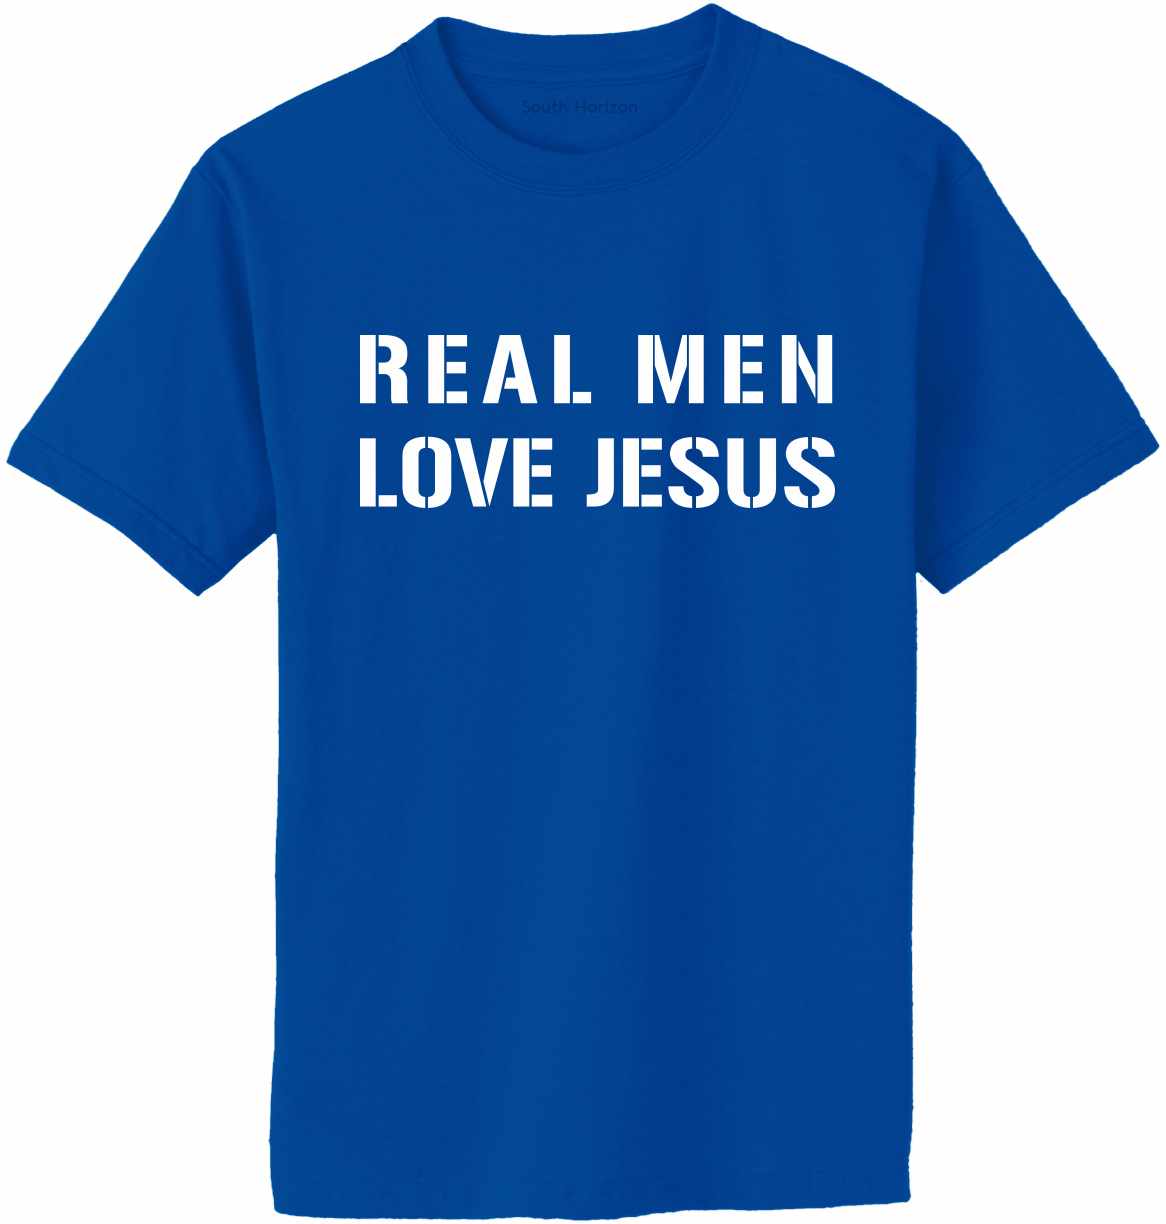 REAL MEN LOVE JESUS Adult T-Shirt (#393-1)